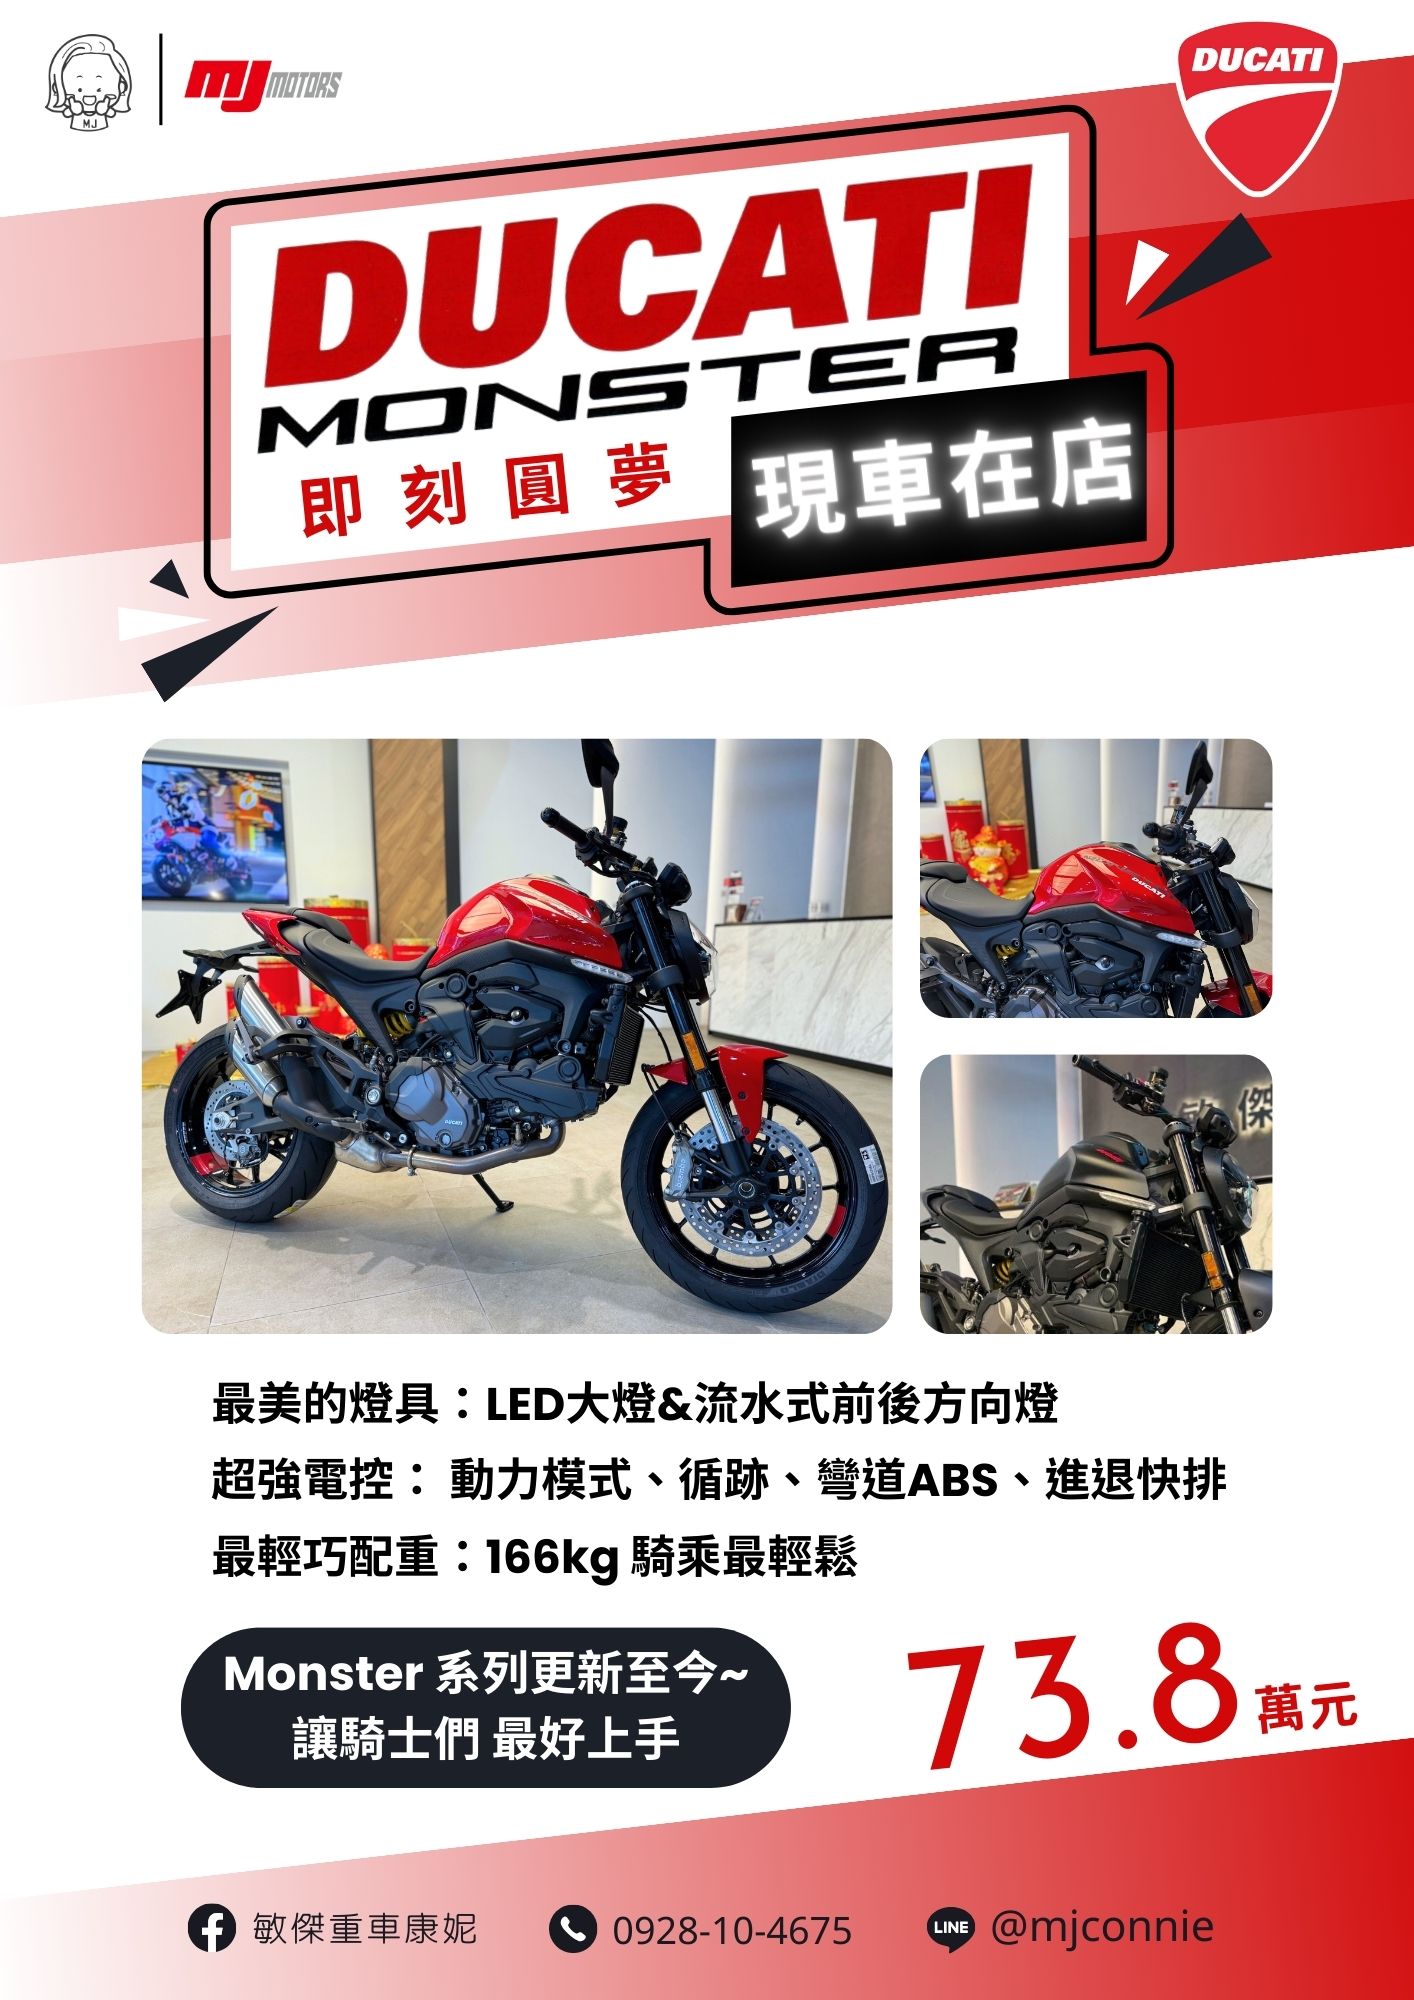 【敏傑車業資深銷售專員 康妮 Connie】Ducati Monster - 「Webike-摩托車市」 『敏傑康妮』Ducati Monster 937 最夯的靈活車款!!正義大利生產~最時尚的車型 73.8萬元